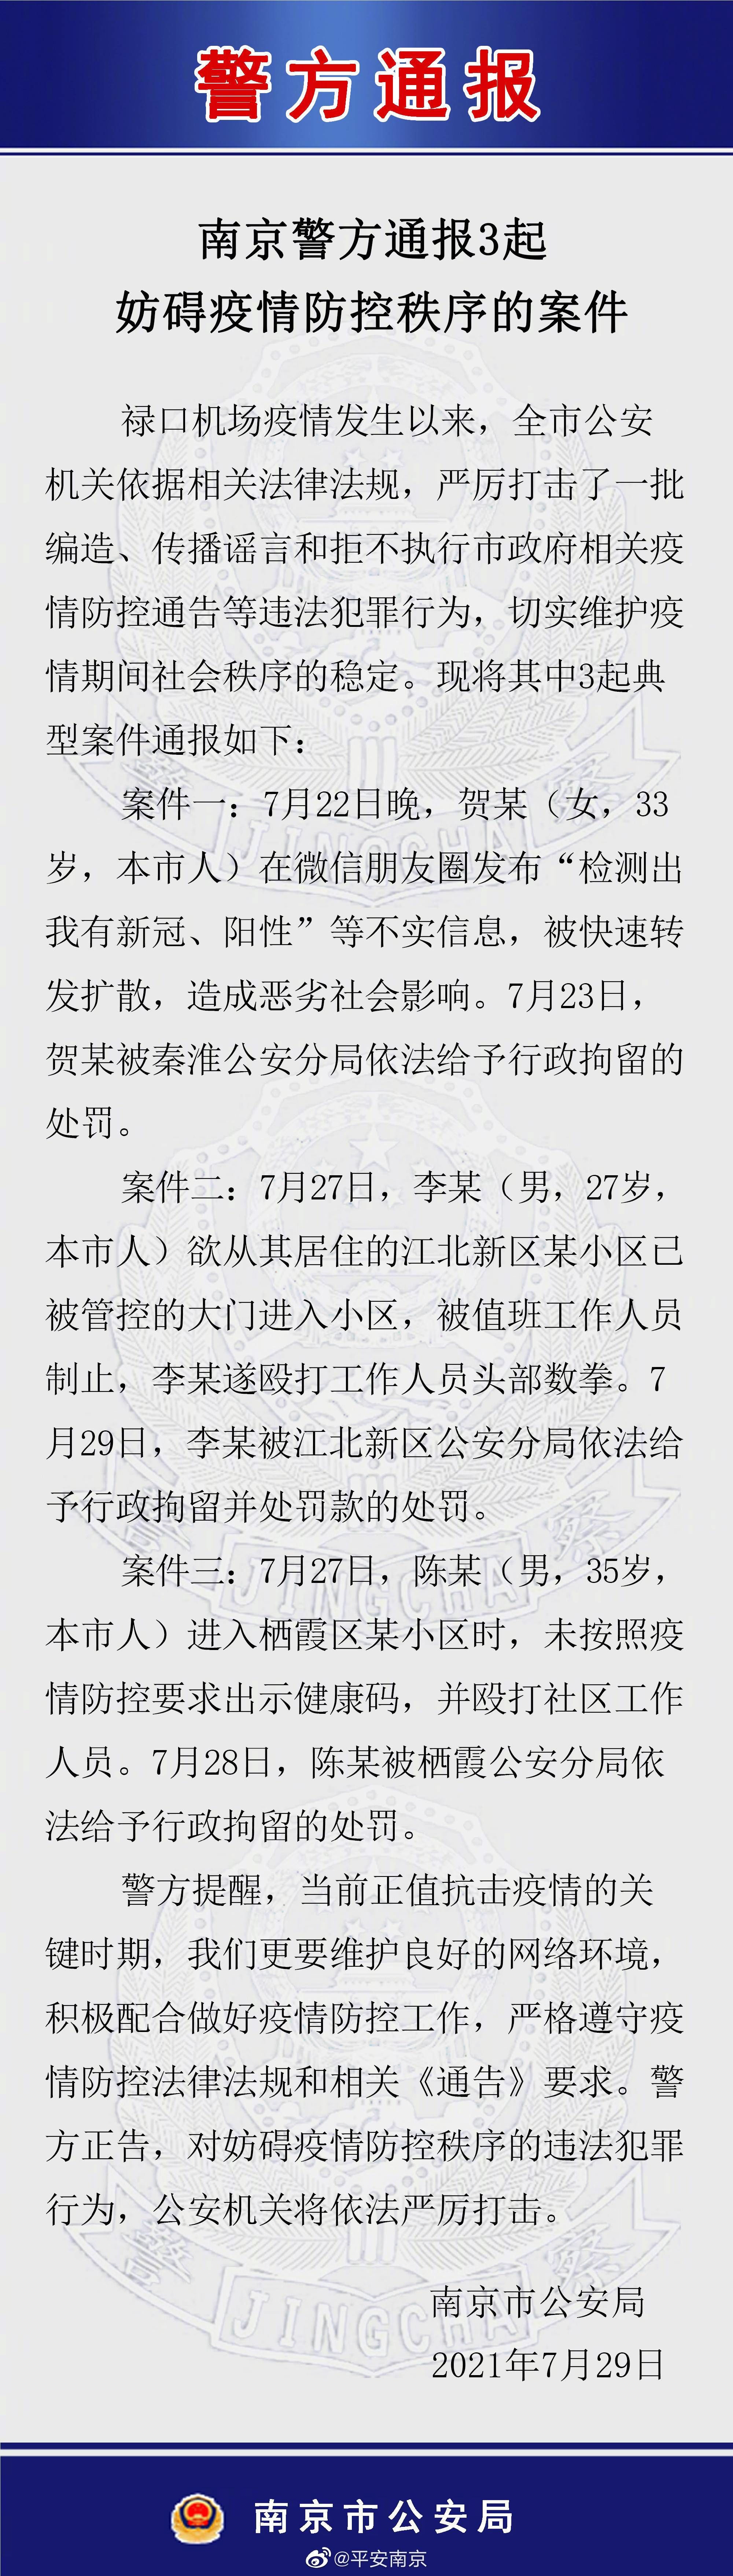 南京警方通报3起妨碍疫情防控秩序的案件